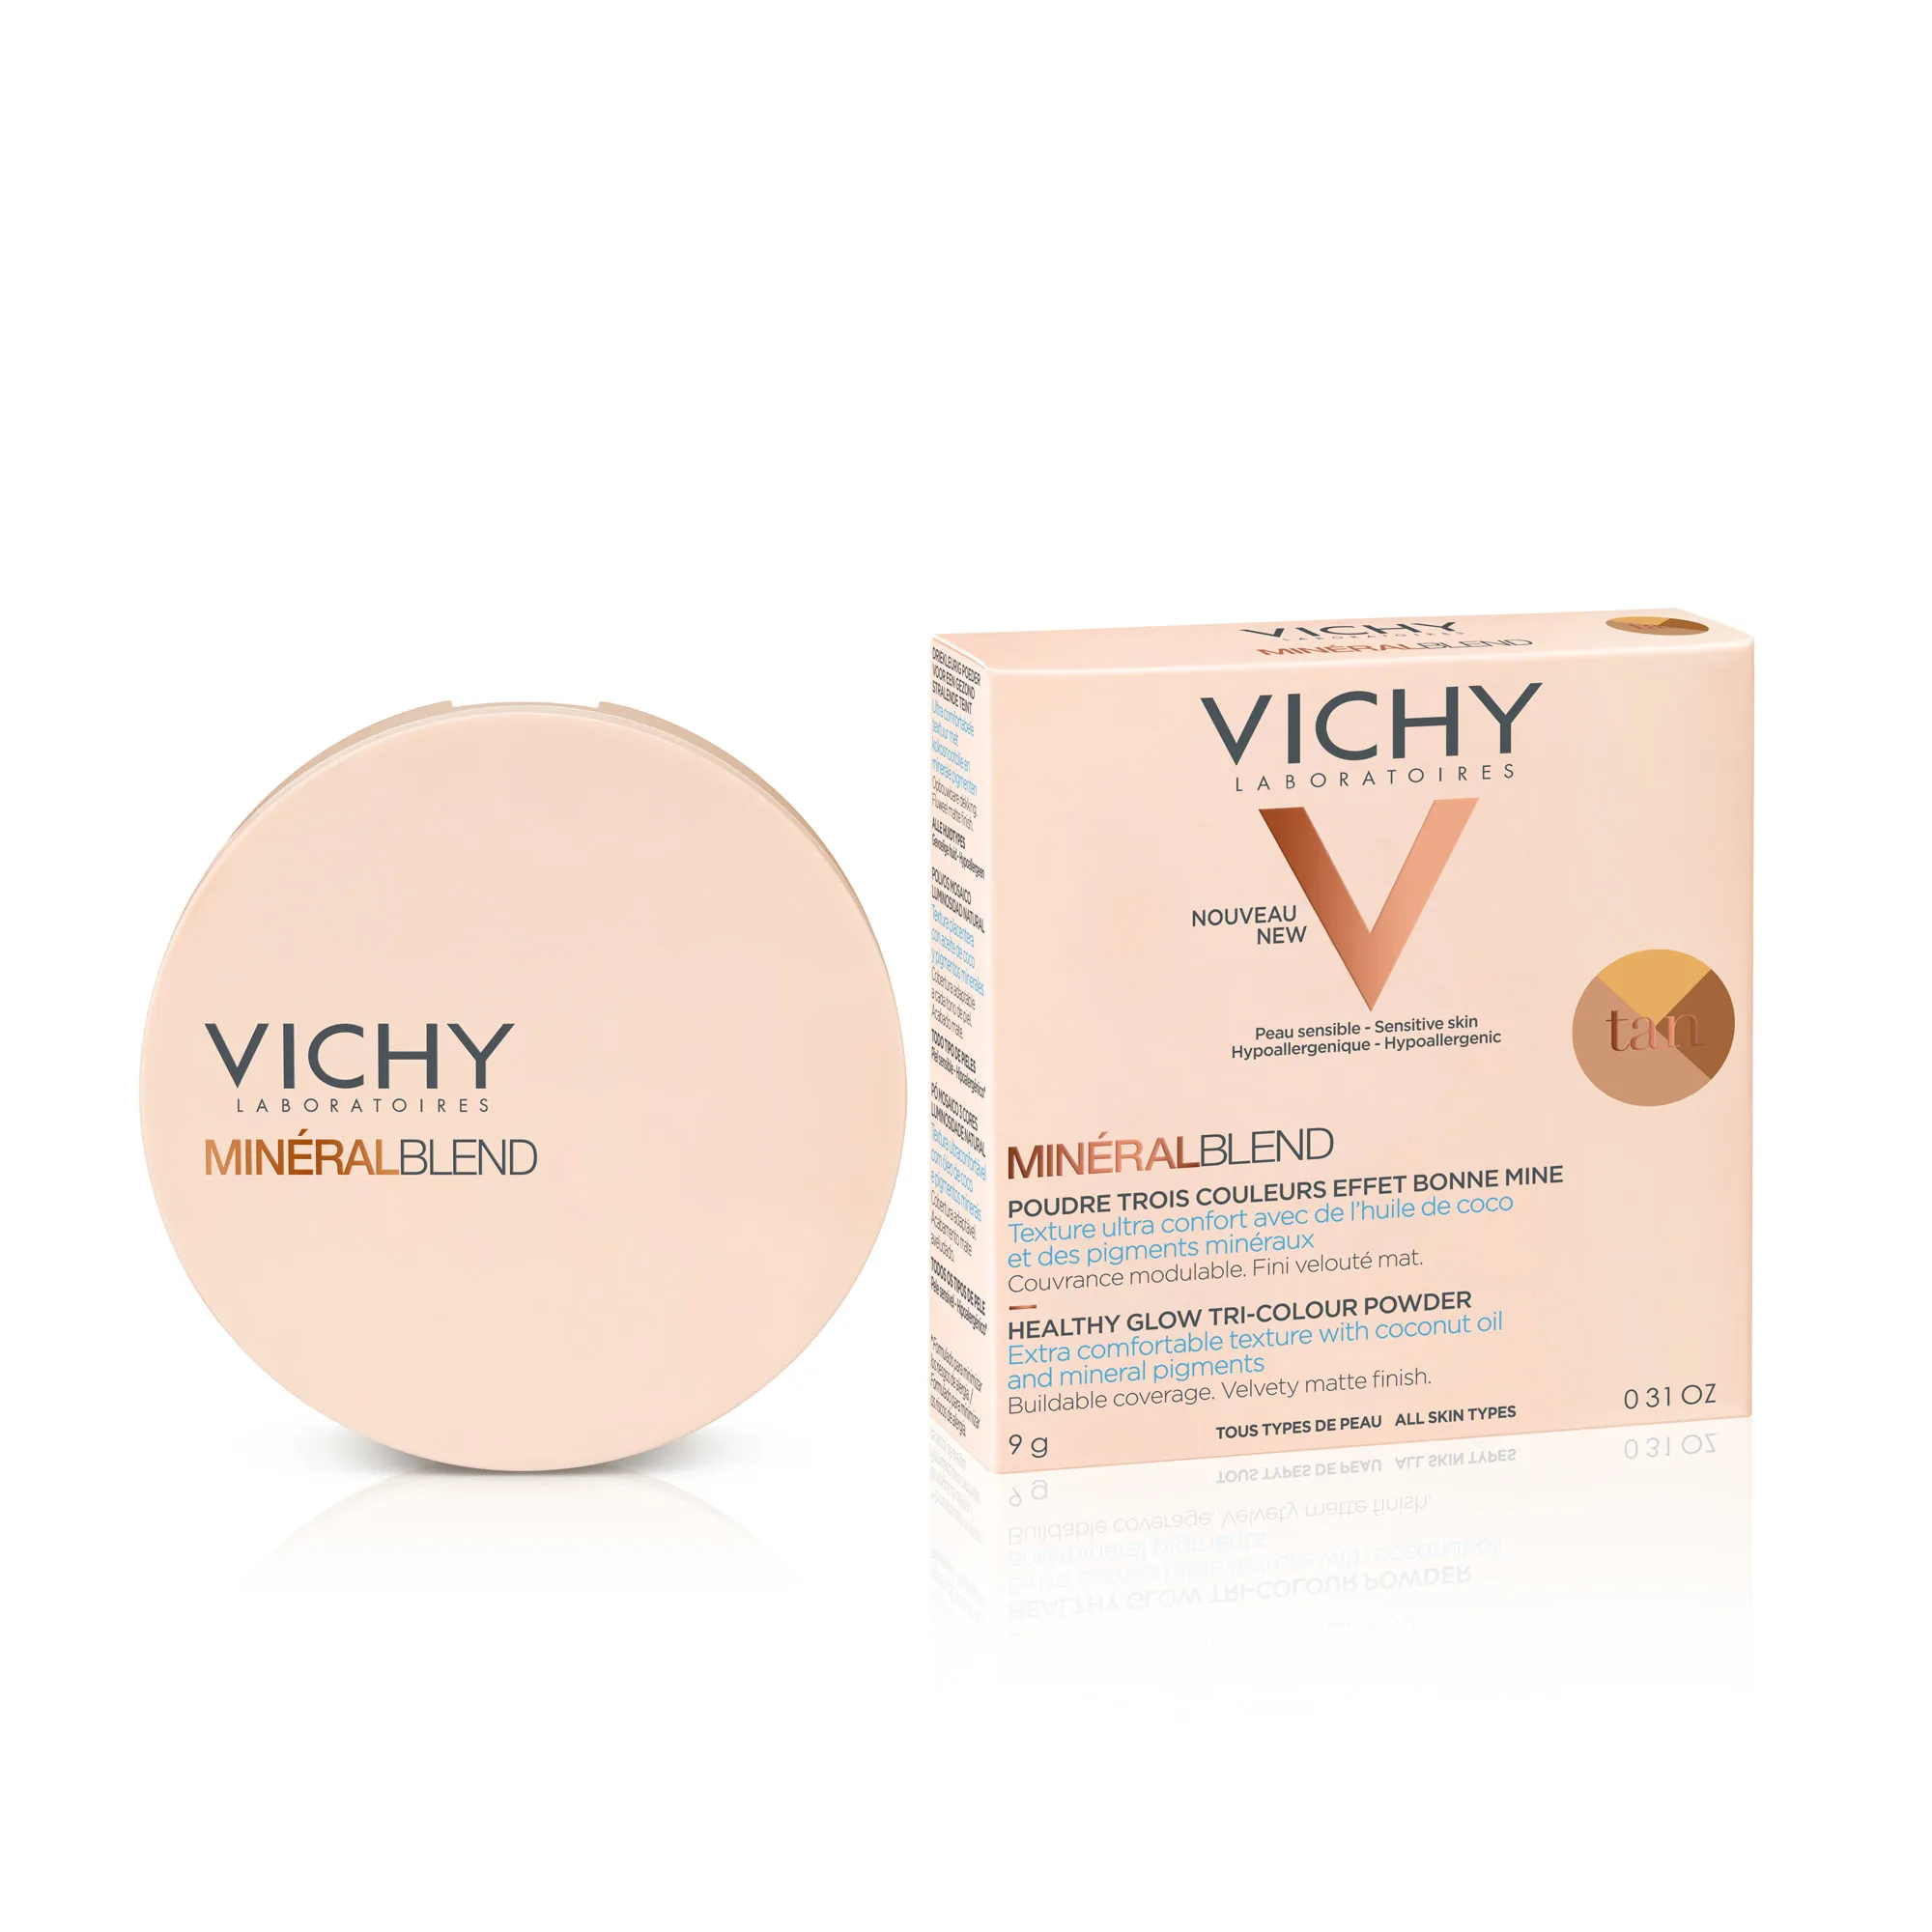 Vichy Mineralblend, puder mozaikowy w kompakcie trójkolorowy, nude tan, 9 g 